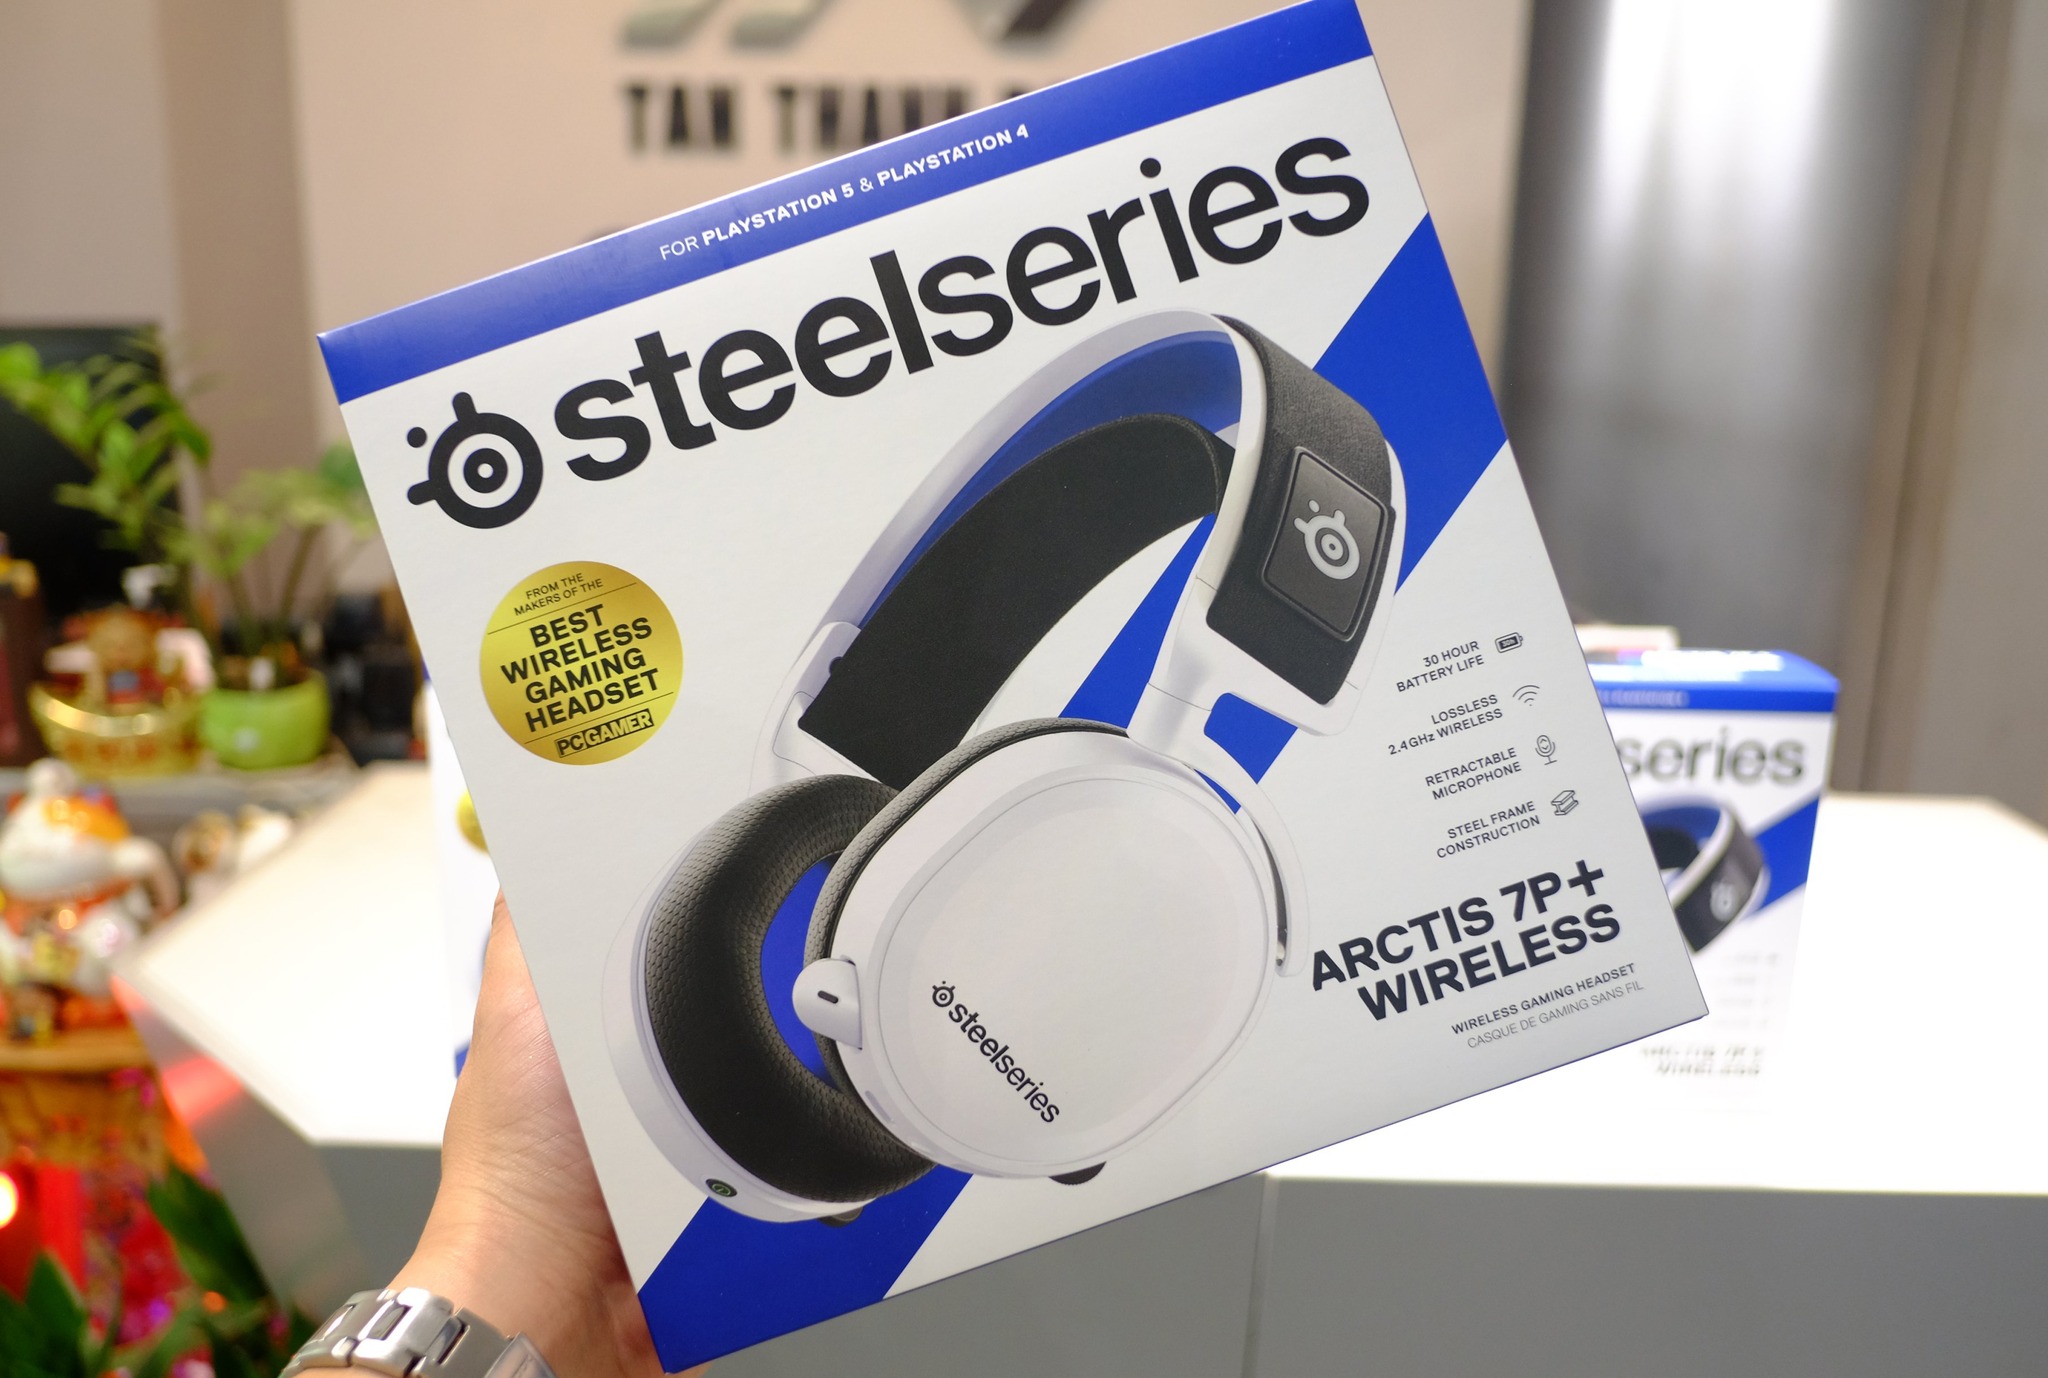 Tai nghe Steelseries Arctis 7P+ Wireless - White_Hàng chính hãng